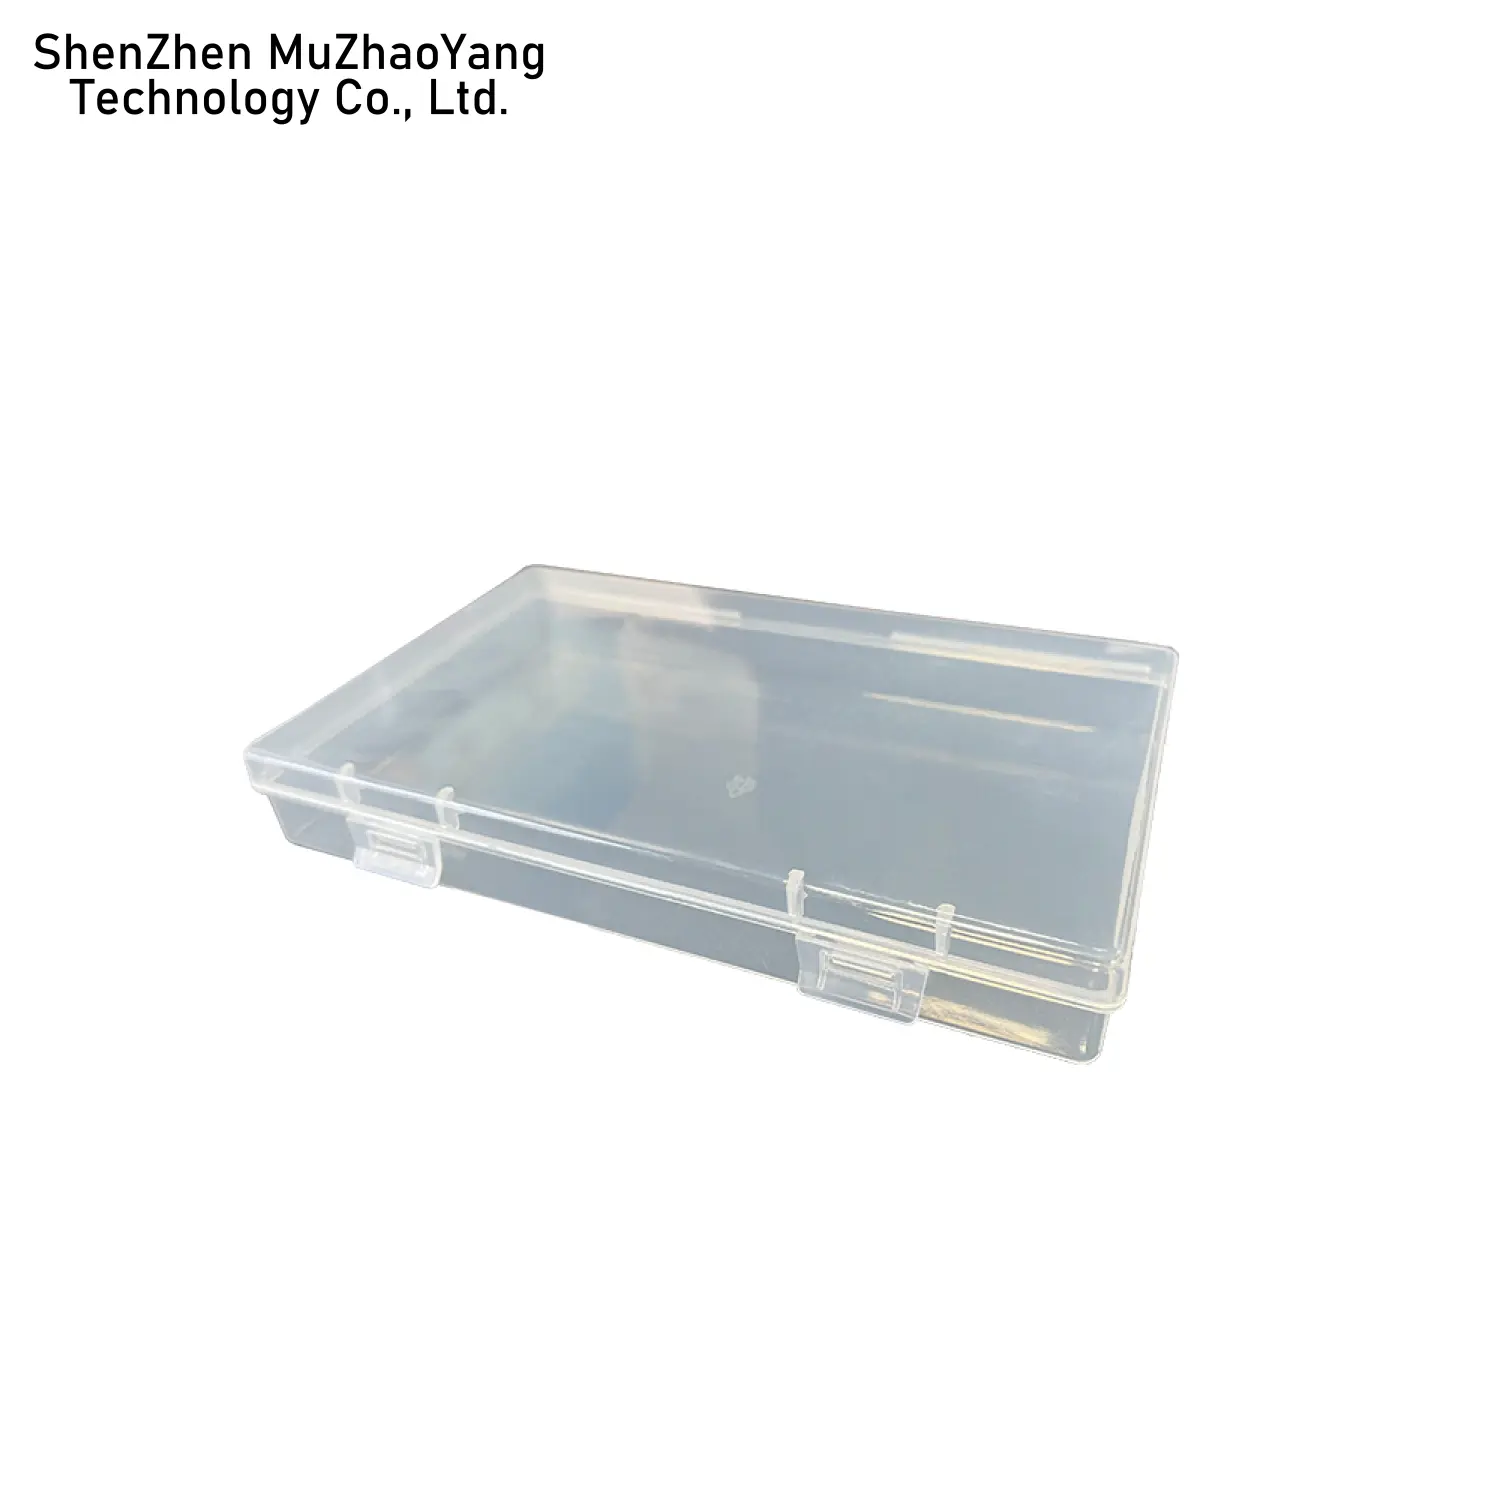 プラスチック製の小さな透明なPPボックス長方形の部品を梱包するためのヒンジ付き蓋付き家庭用庭収納ボックスプラスチックオーガナイザー